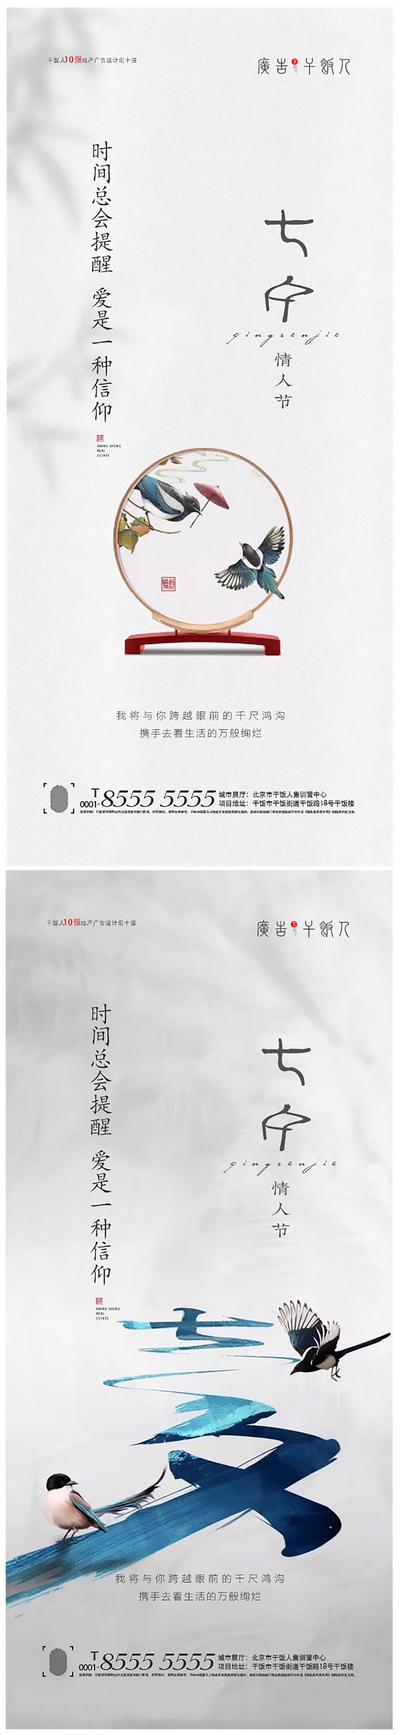 南门网 海报 房地产 七夕 情人节 中国传统节日 喜鹊 屏风